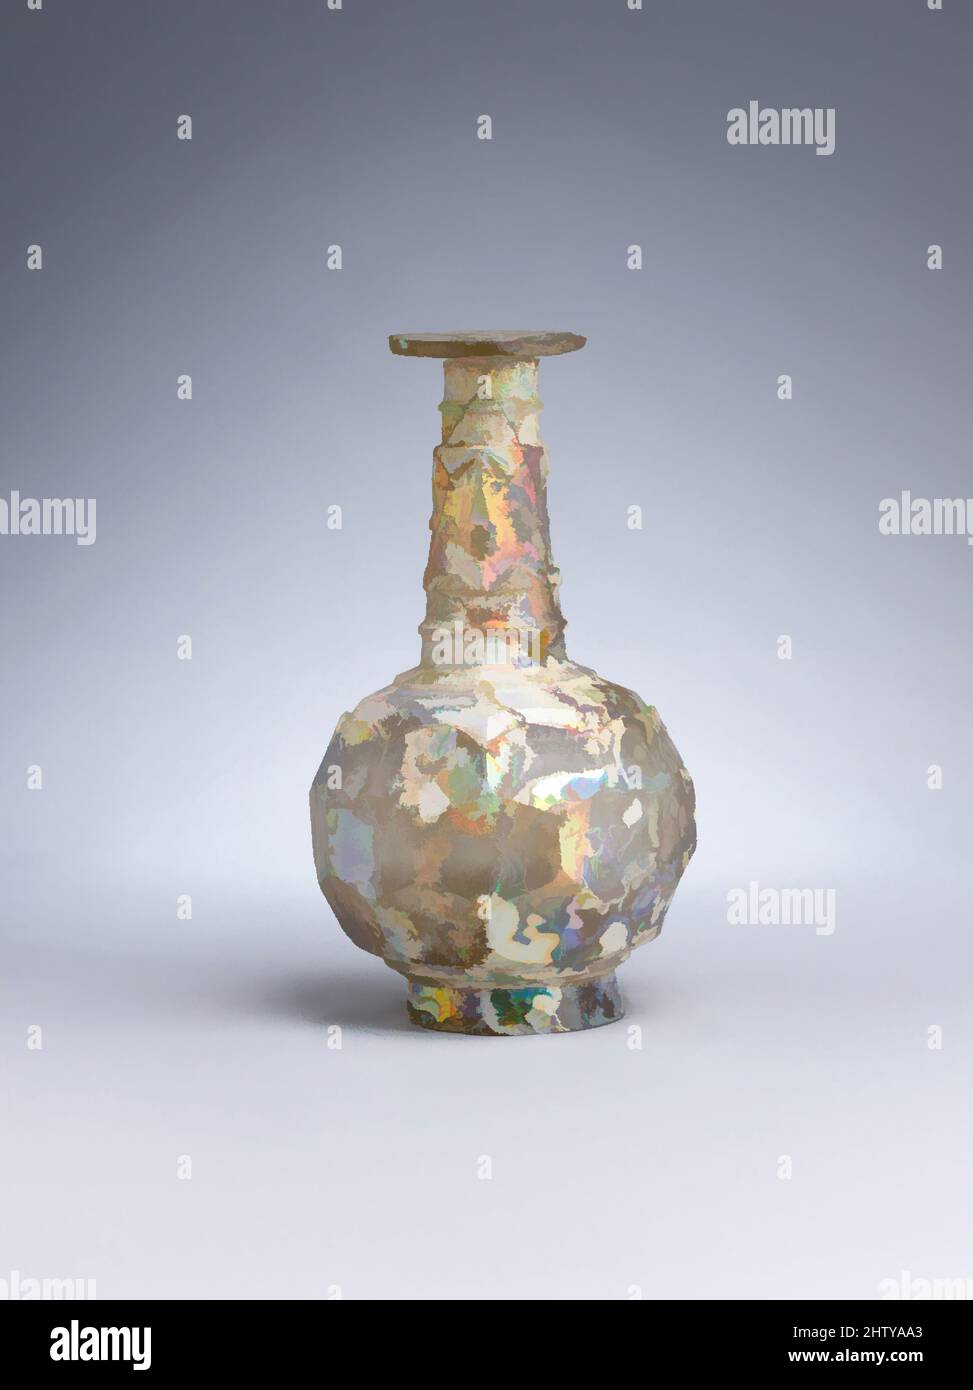 Arte ispirata da bottiglia, 9th–10th secolo, attribuita all'Iran, vetro, incolore con colorazione giallastra; soffiato, tagliato, H. 6 1/2 poll. (16 .5cm), il vetro, la decorazione principale di questa bottiglia di vetro iridescente è fatta di file orizzontali di esagoni, in un motivo 'a nido d'ape'. Questo effetto sfaccettato è stato, opere classiche modernizzate da Artotop con un tuffo di modernità. Forme, colore e valore, impatto visivo accattivante sulle emozioni artistiche attraverso la libertà delle opere d'arte in modo contemporaneo. Un messaggio senza tempo che persegue una nuova direzione selvaggiamente creativa. Artisti che si rivolgono al supporto digitale e creano l'NFT Artotop Foto Stock